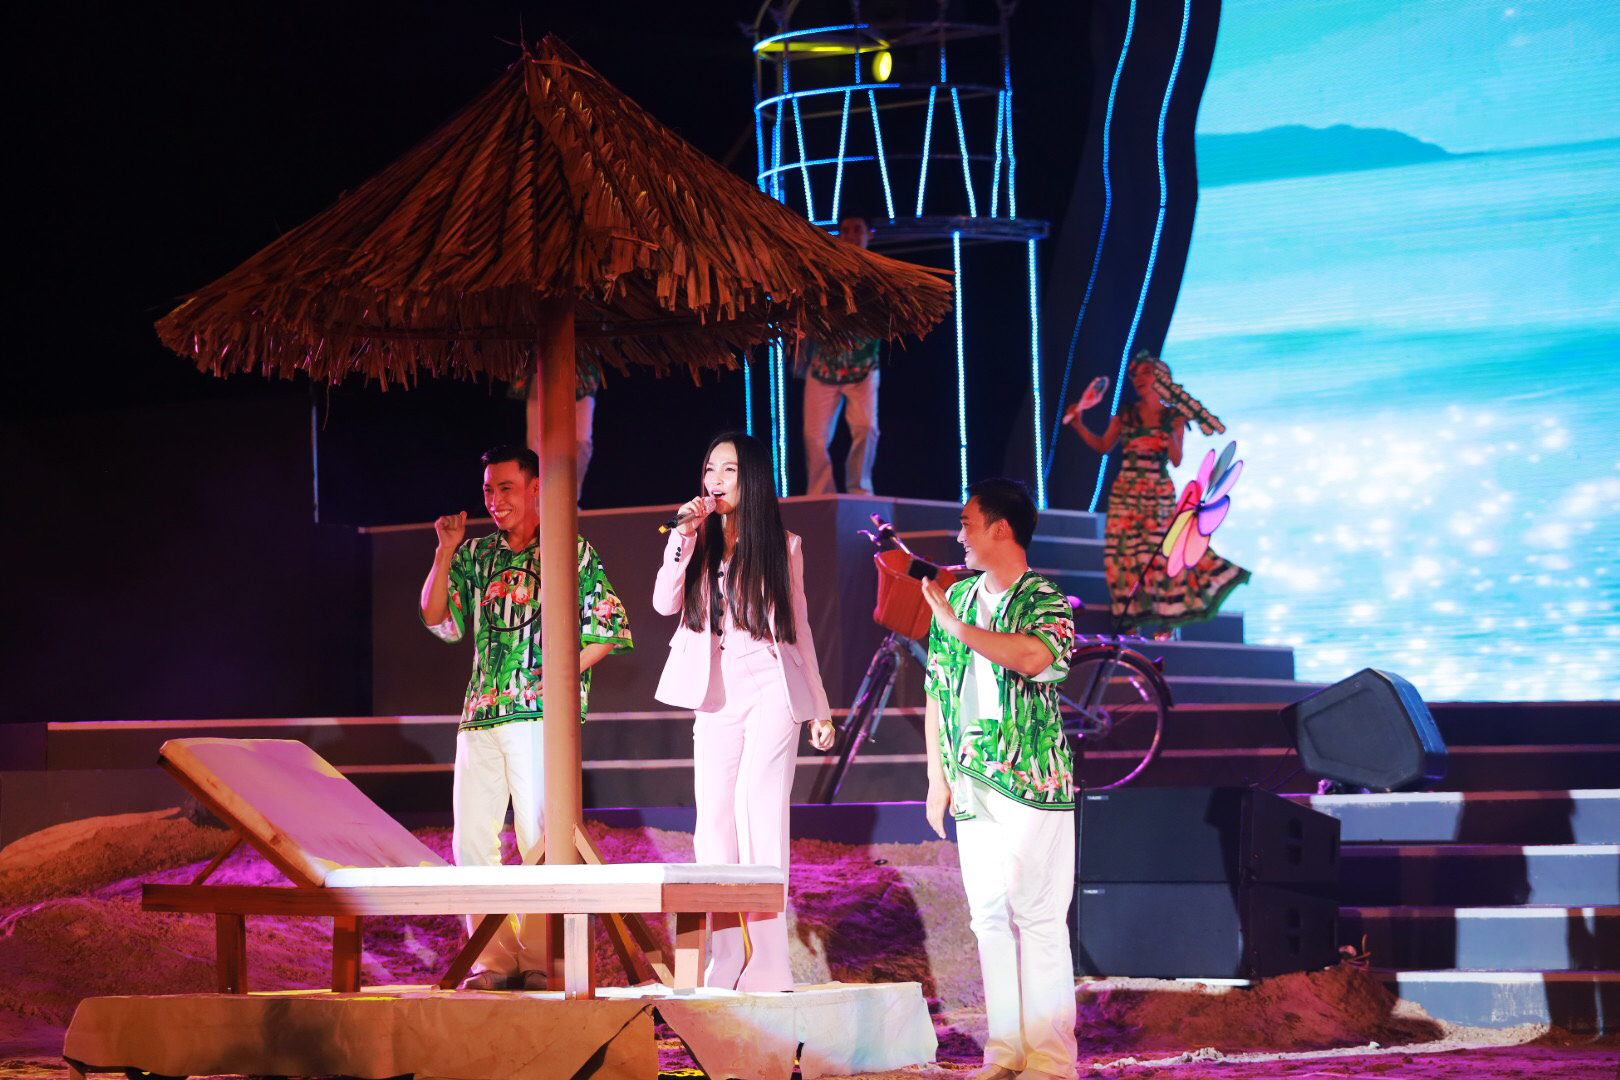 Ca sĩ Hiền Thục mang đến những giai điệu ngọt ngào, ý nghĩa trong Đảo thần tiên - Vì một thế giới xanh trong